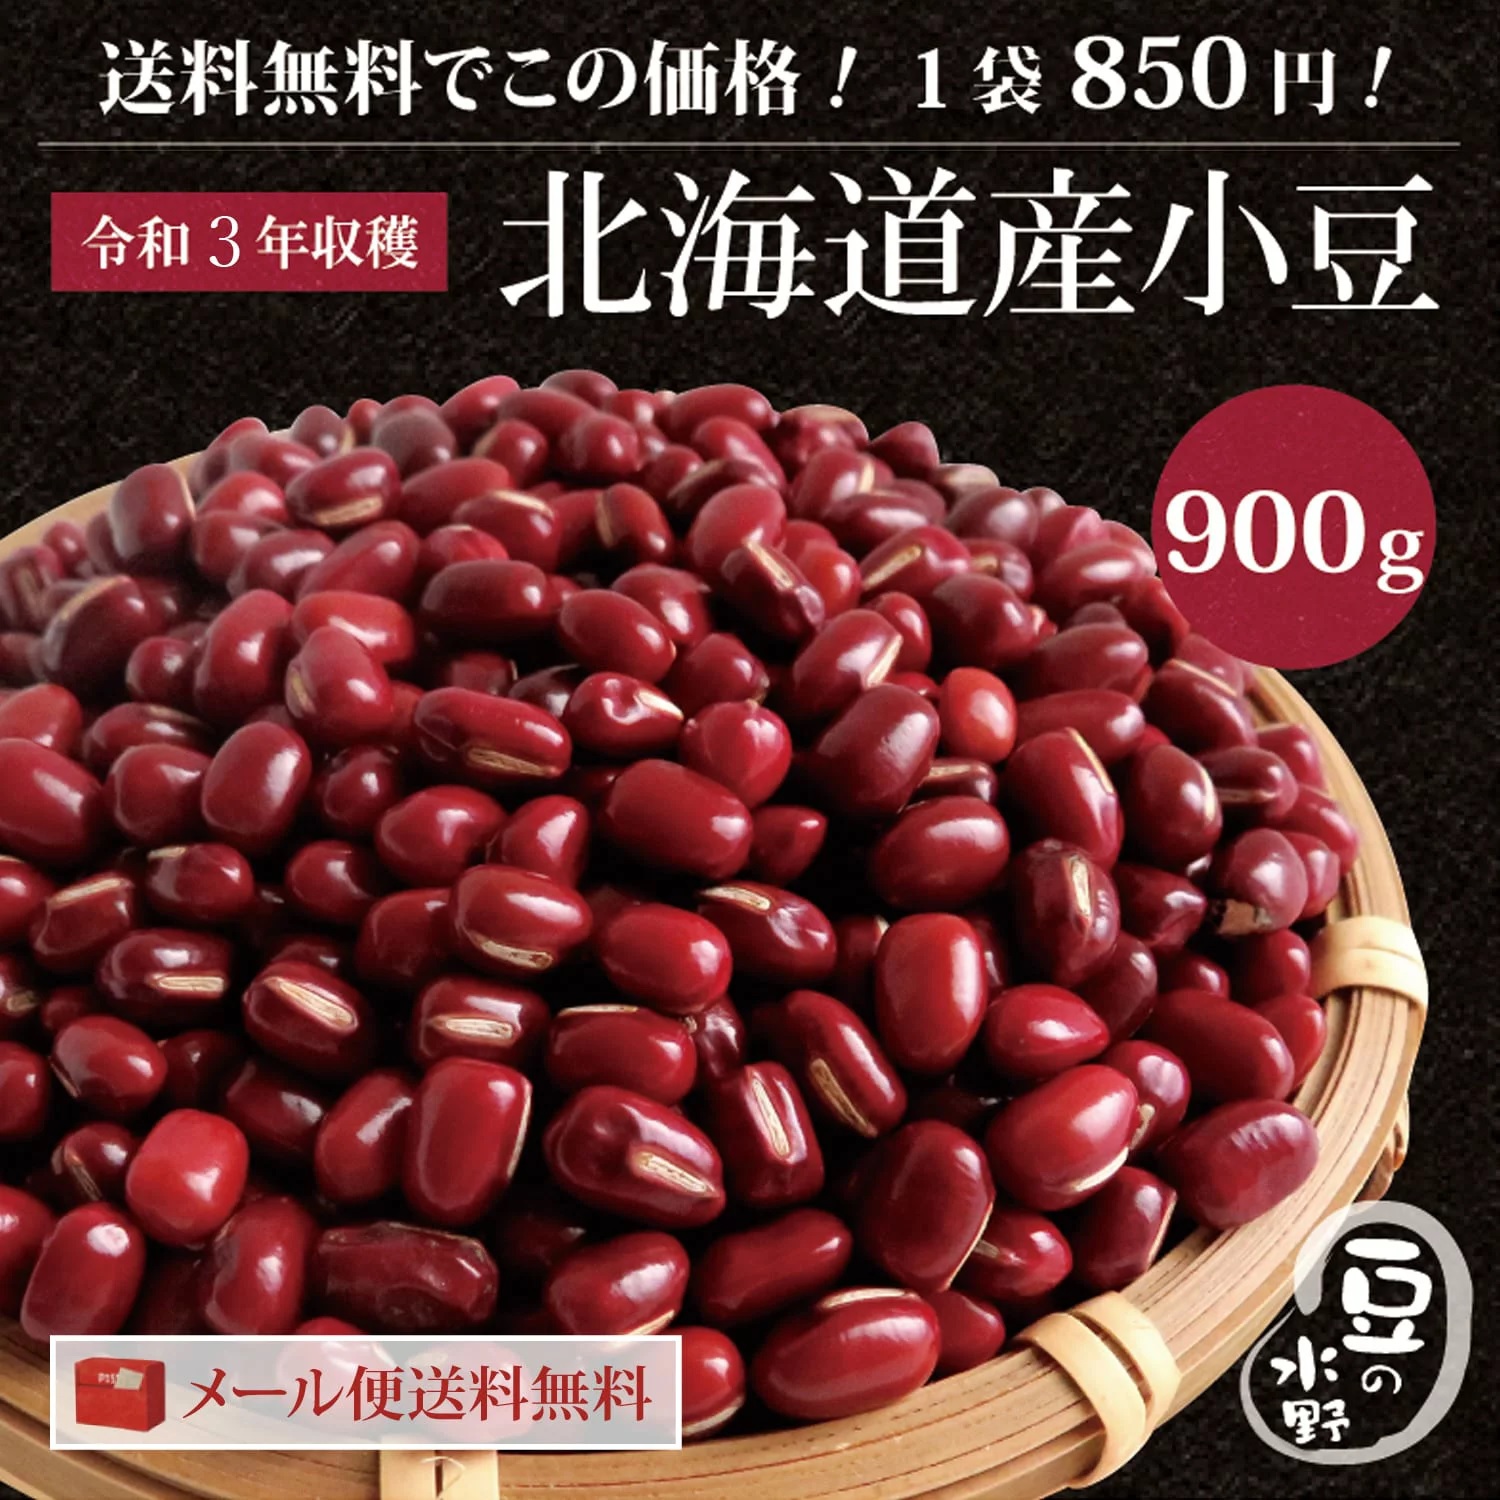 日本初の 極 12個入り ゆであずき 200g 乾燥豆類